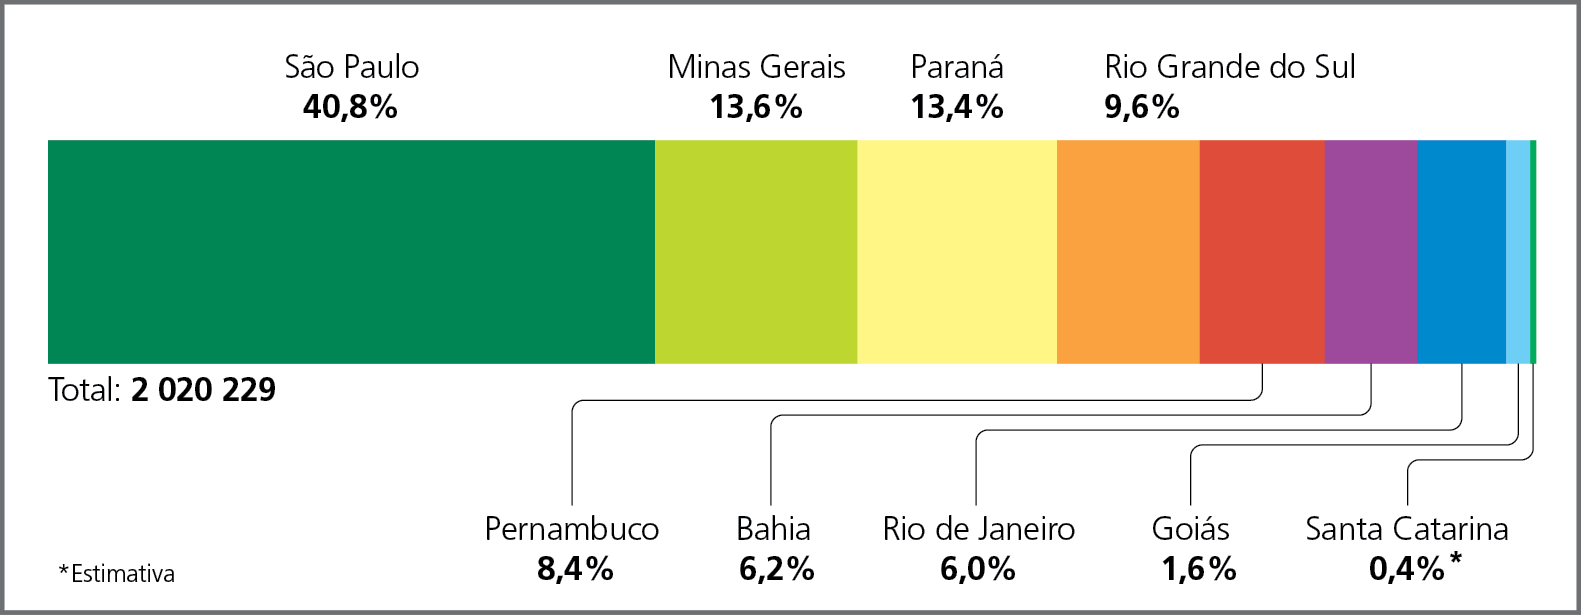 Gráfico. Brasil: produção de autoveículos por unidade da federação – 2020
Gráfico composto por uma barra horizontal única que mostra, em porcentagem, a produção de veículos por unidade da federação. Abaixo, há o total de autoveículos produzidos em números absolutos.
São Paulo 40,8 por cento. Minas Gerais 13,6 por cento. Paraná 13,4 por cento. Rio Grande do Sul 9,6 por cento. Pernambuco 8,4 por cento. Bahia 6,2 por cento. Rio de Janeiro 6,0 por cento. Goiás 1,6 por cento. Santa Catarina 0,4 por cento (estimativa). Total de autoveículos produzidos: 2.020.229.